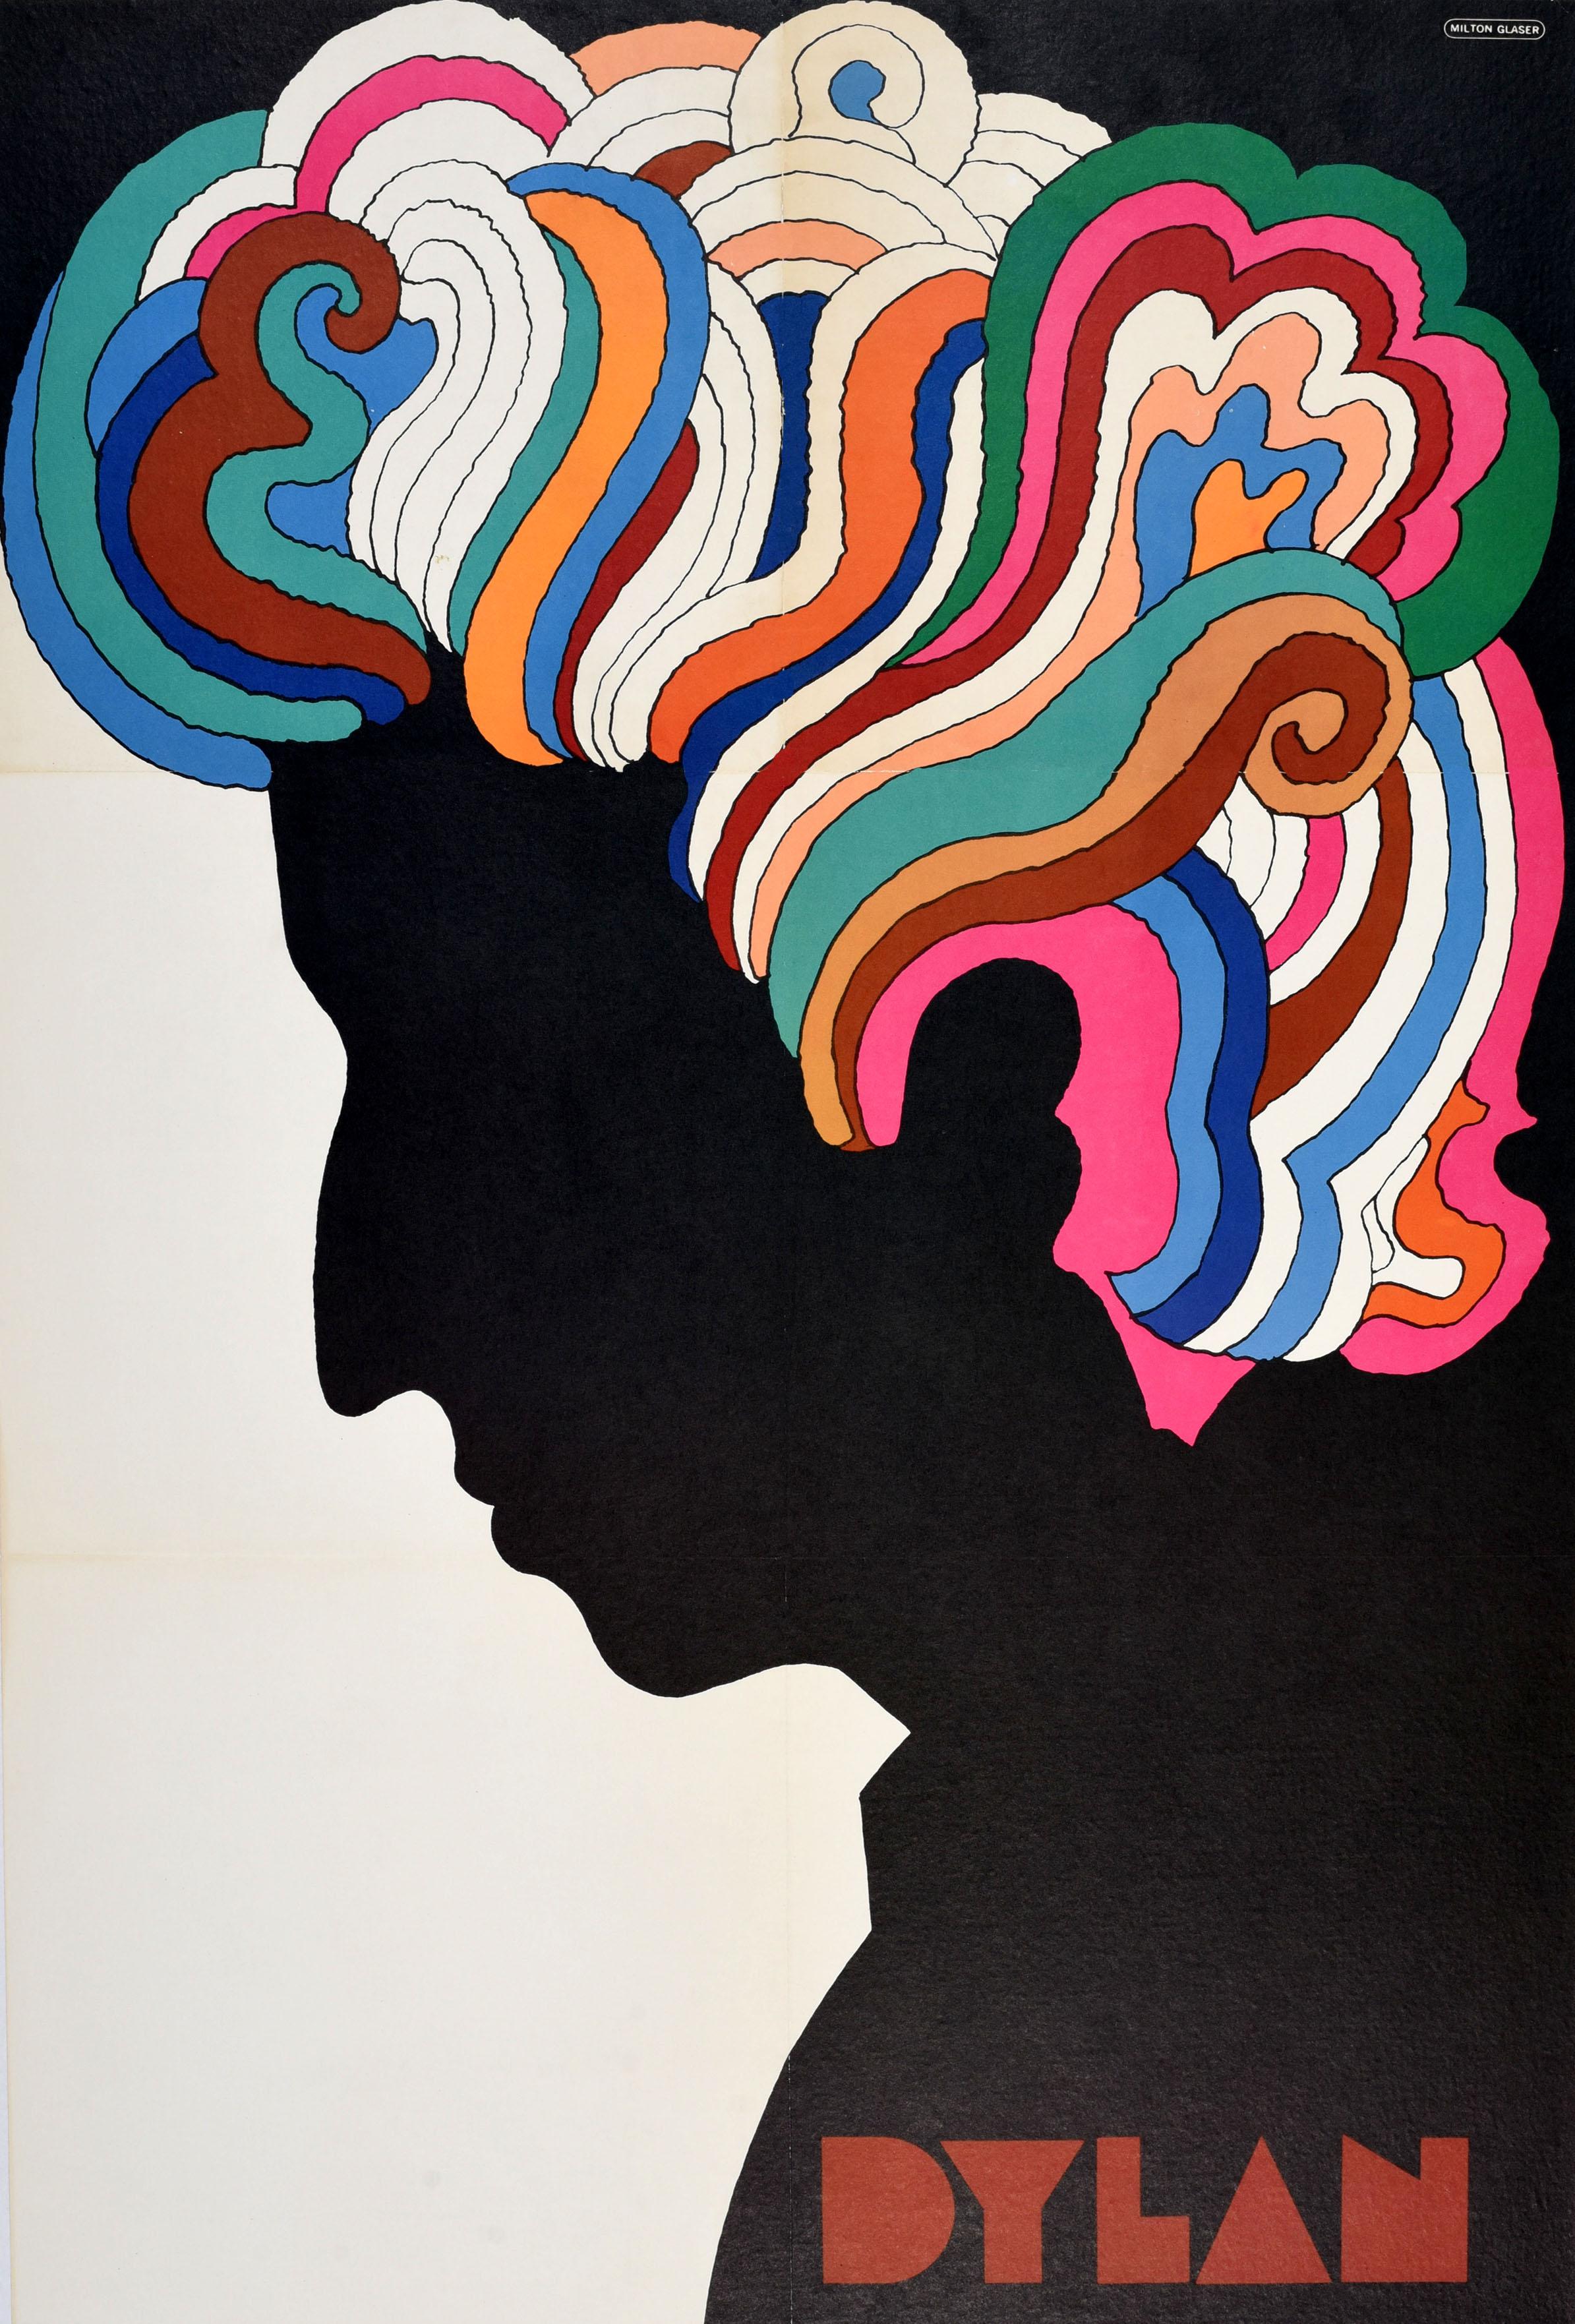 Affiche musicale originale de l'époque psychédélique des années 60, représentant l'image emblématique du musicien Bob Dylan (Robert Allen Zimmerman ; né en 1941). Ce dessin coloré représentant le profil de Dylan avec des cheveux tourbillonnants,